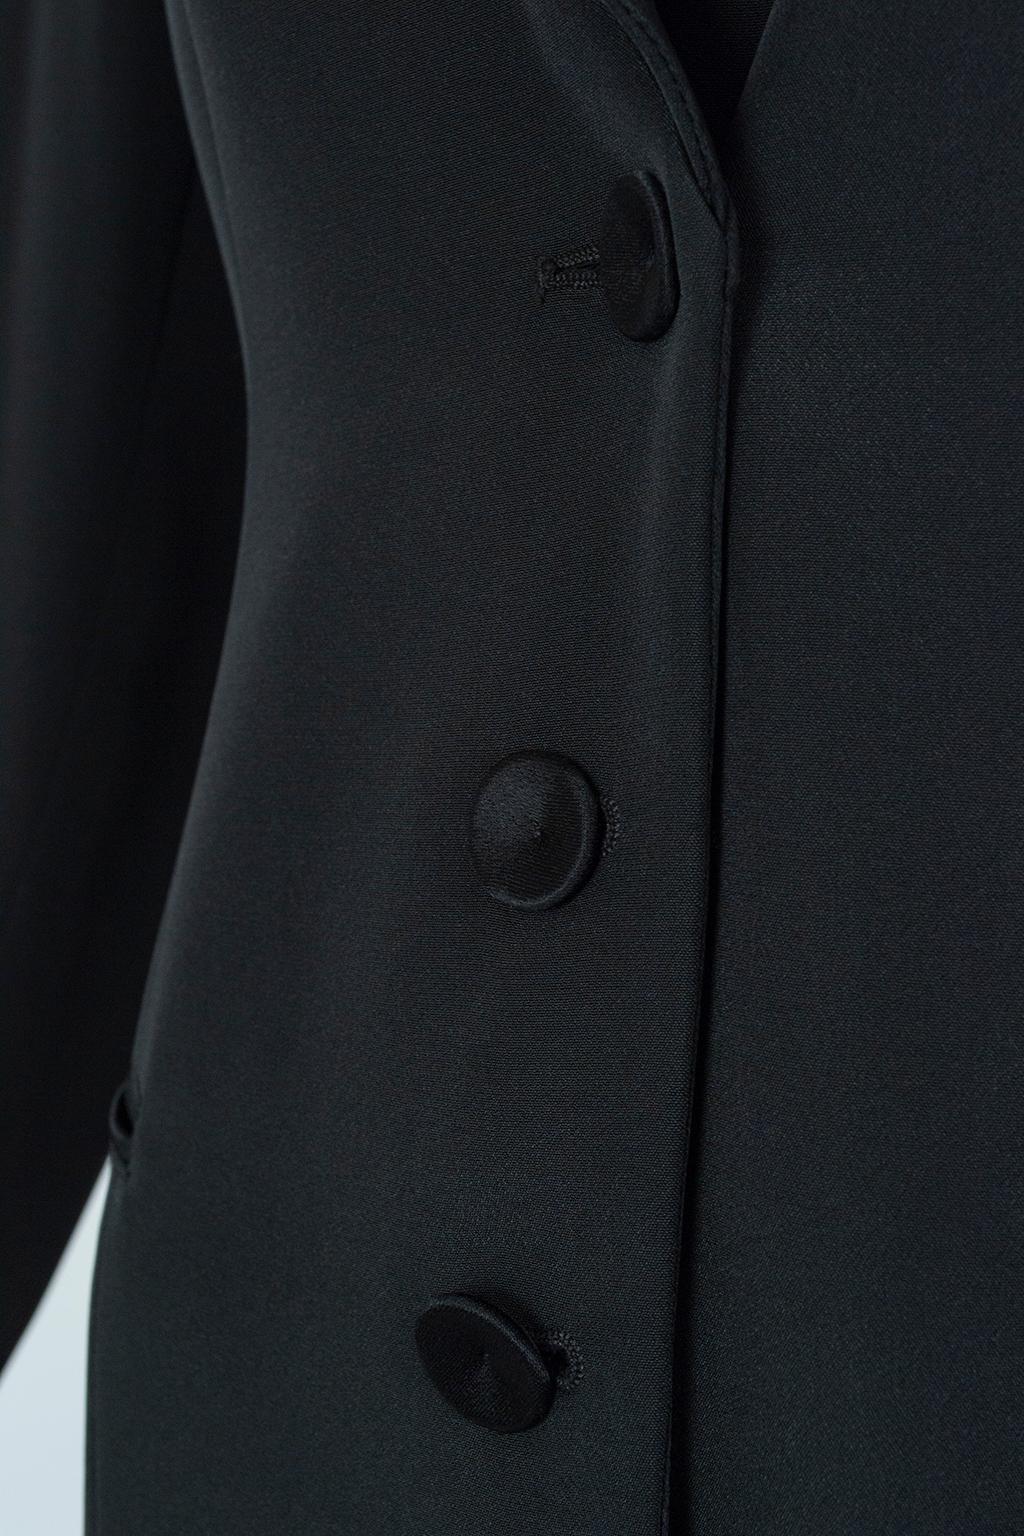 Giorgio Armani Black Silk Faille “Le Smoking” Tuxedo Blazer Jacket - It 42, 2001 For Sale 2